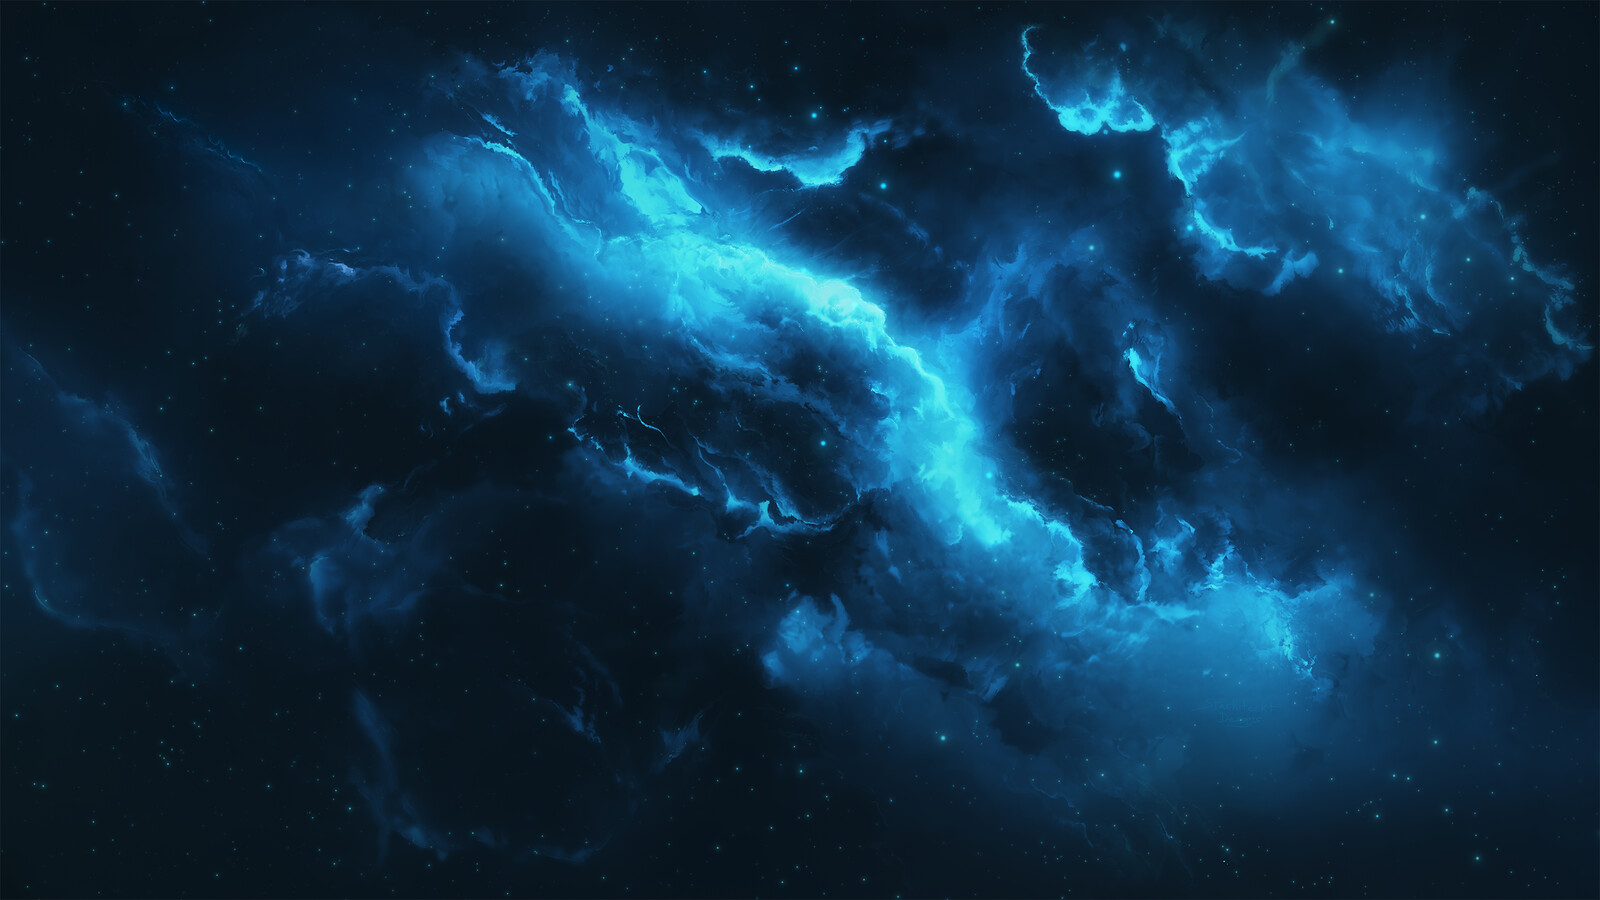 Atlantis Nebula 15